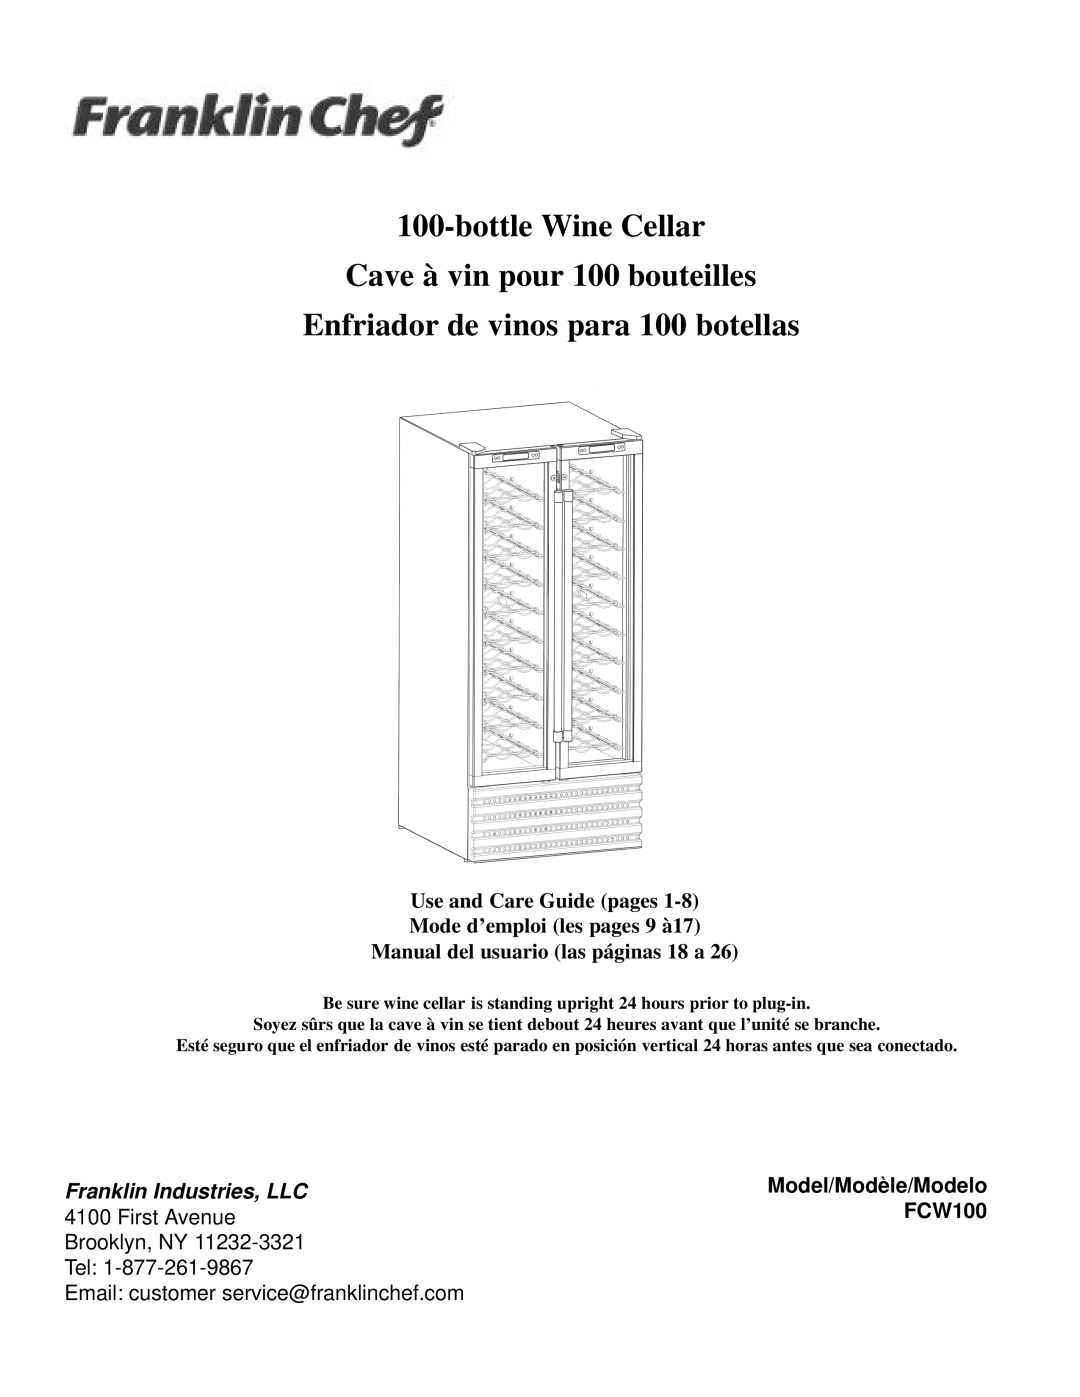 Franklin Industries, L.L.C FCW100 manual bottleWine Cellar, Cave à vin pour 100 bouteilles, Use and Care Guide pages 